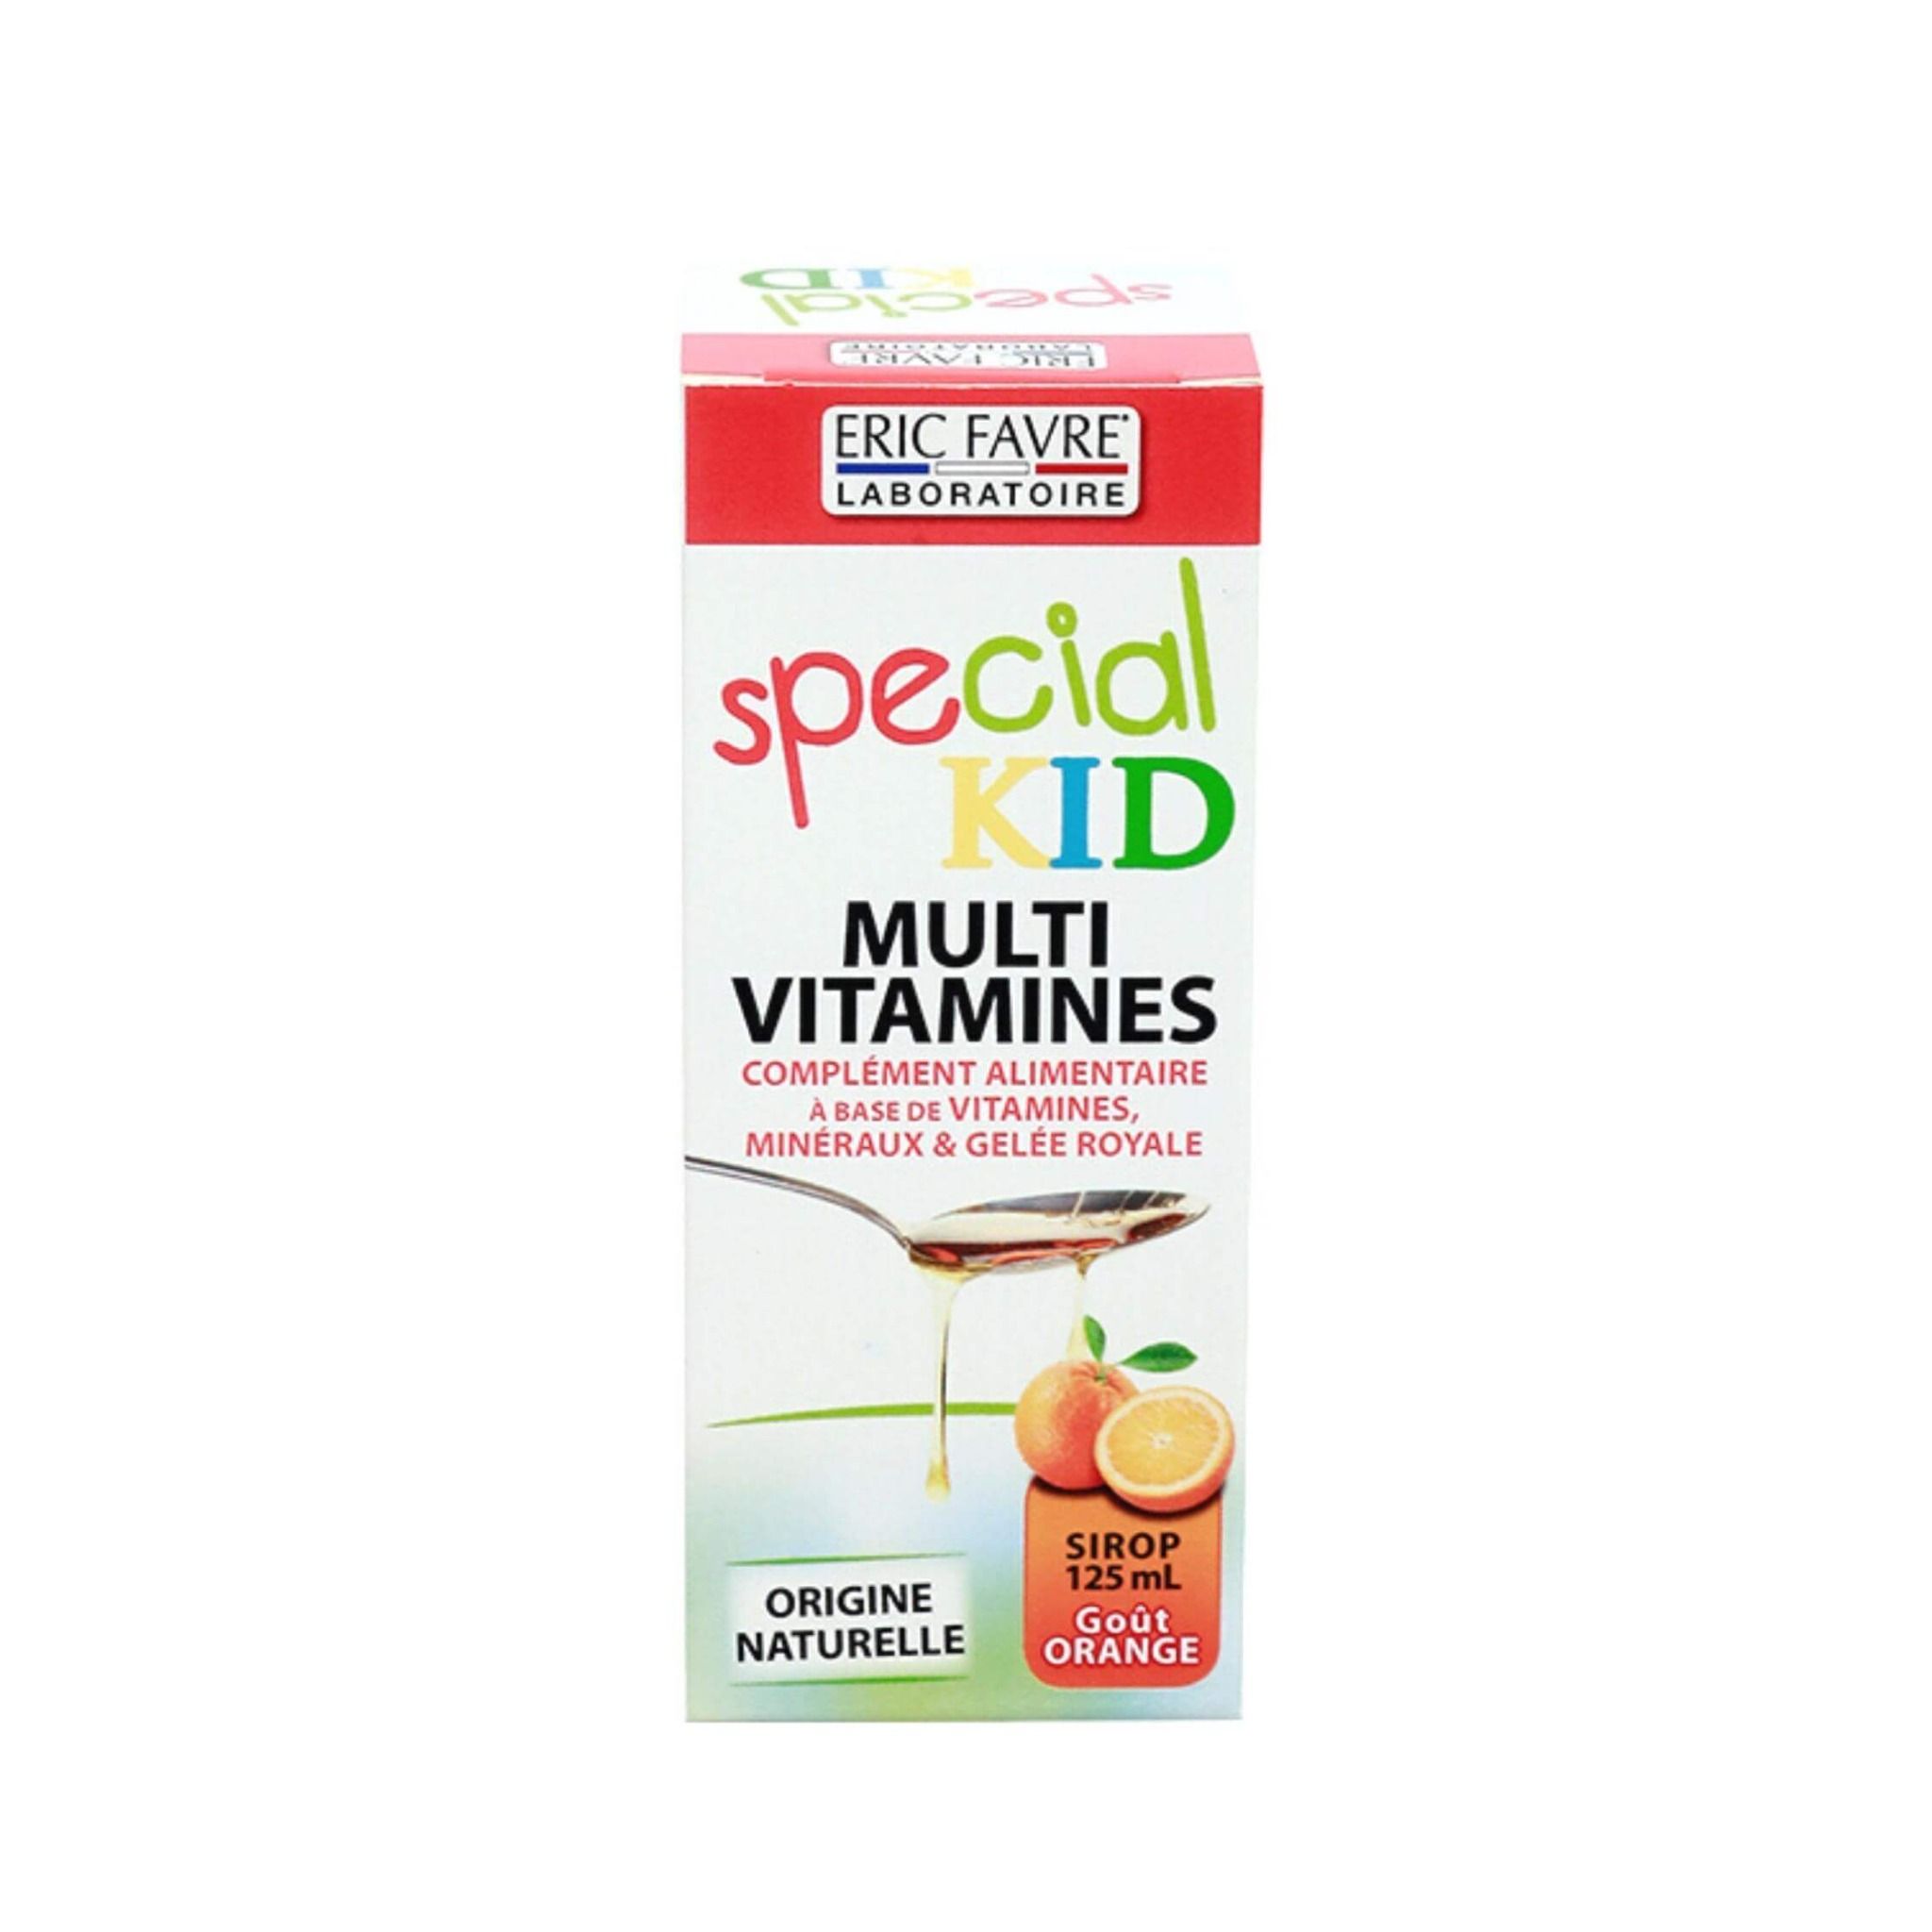  Special Kid Multivitamines  - Hỗ trợ tăng cường thể lực và sức khỏe cho trẻ [Nhập khẩu Pháp] 